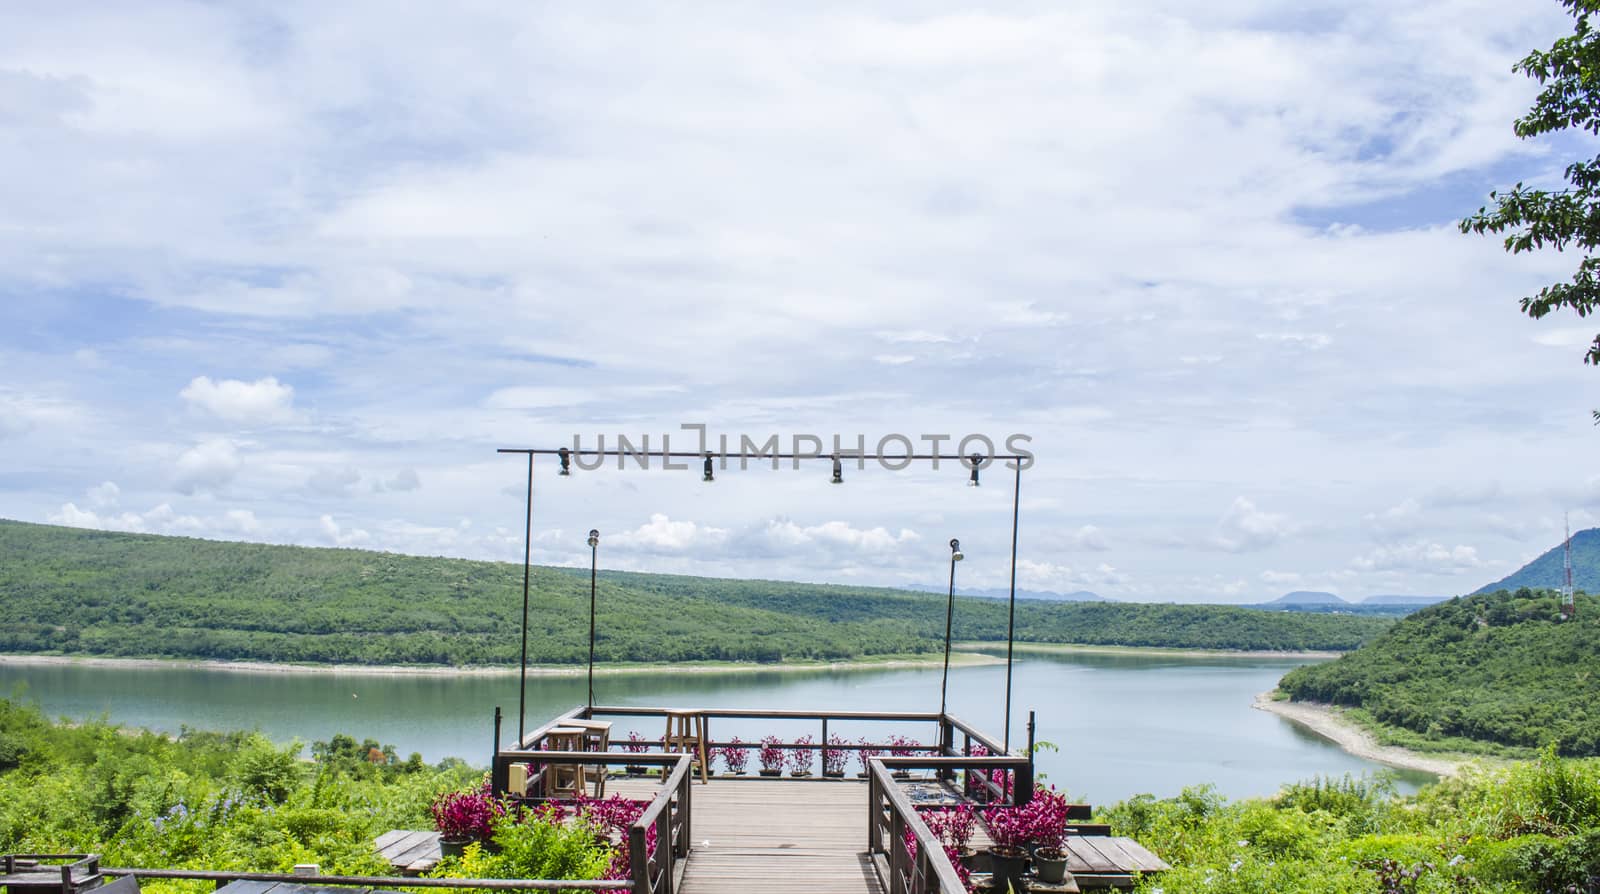 Open View Landscape at Lamtaklong reservoir, Thailand.